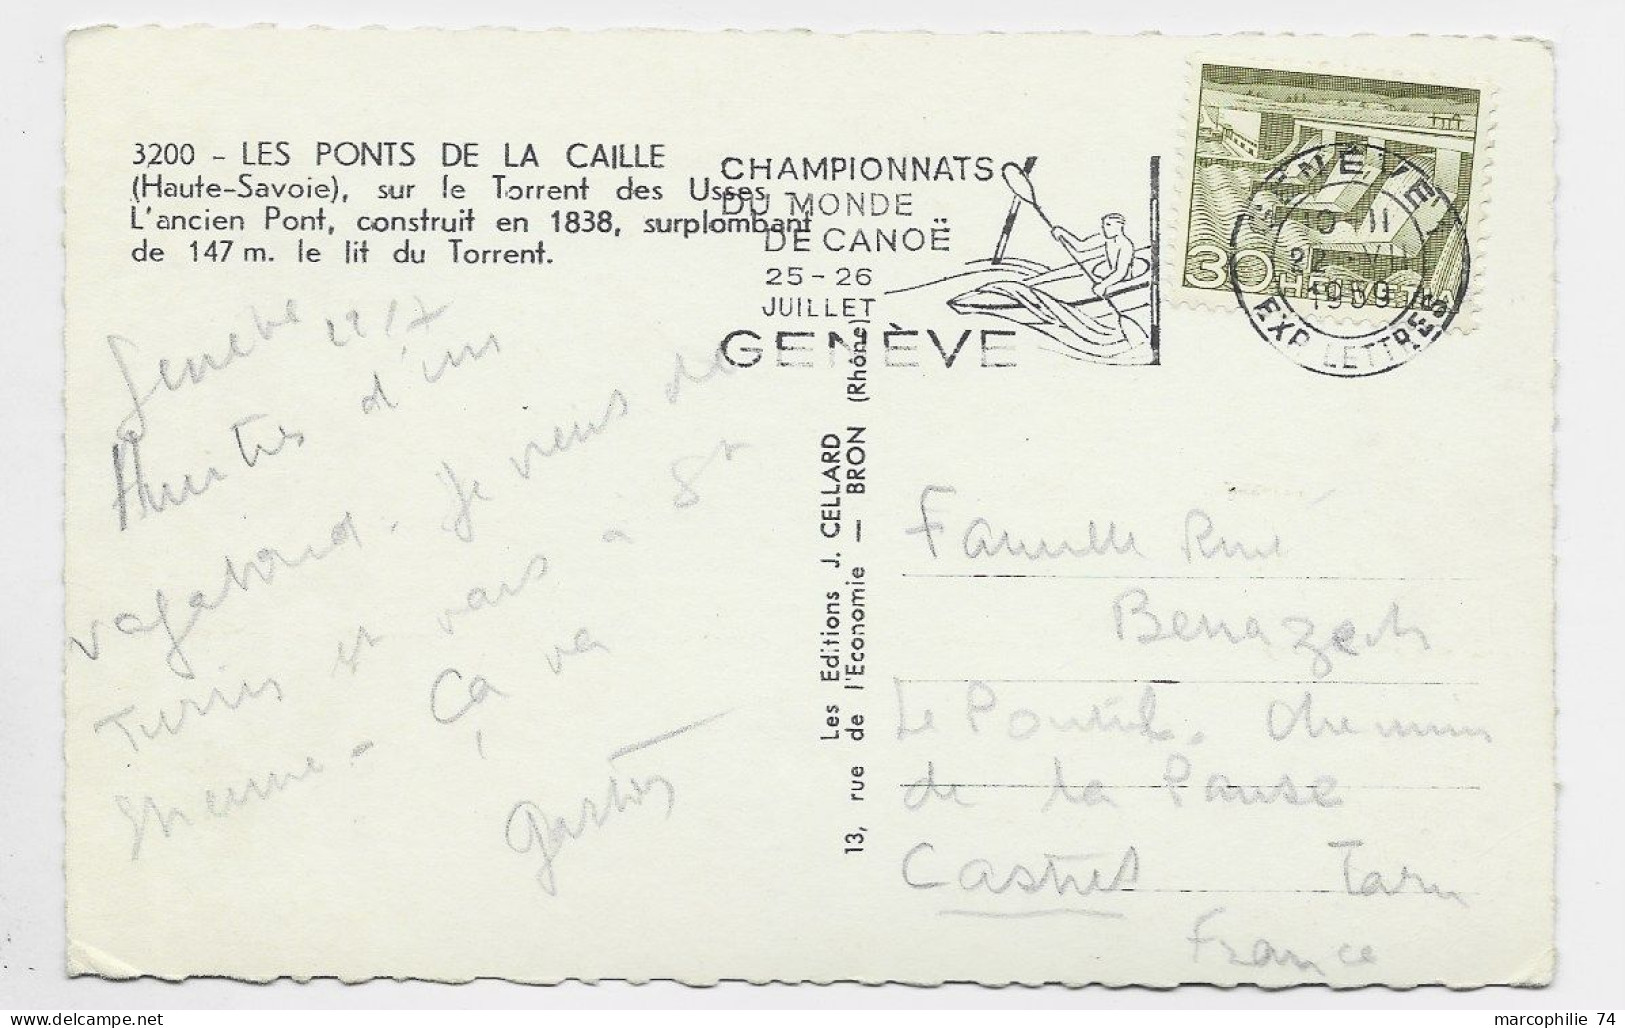 SUISSE HELVETIA 30C SOLO CARD FRANCE MECANIQUE GENEVE CHAMPIONNATS MONDE CANOE 1959 - Kanu